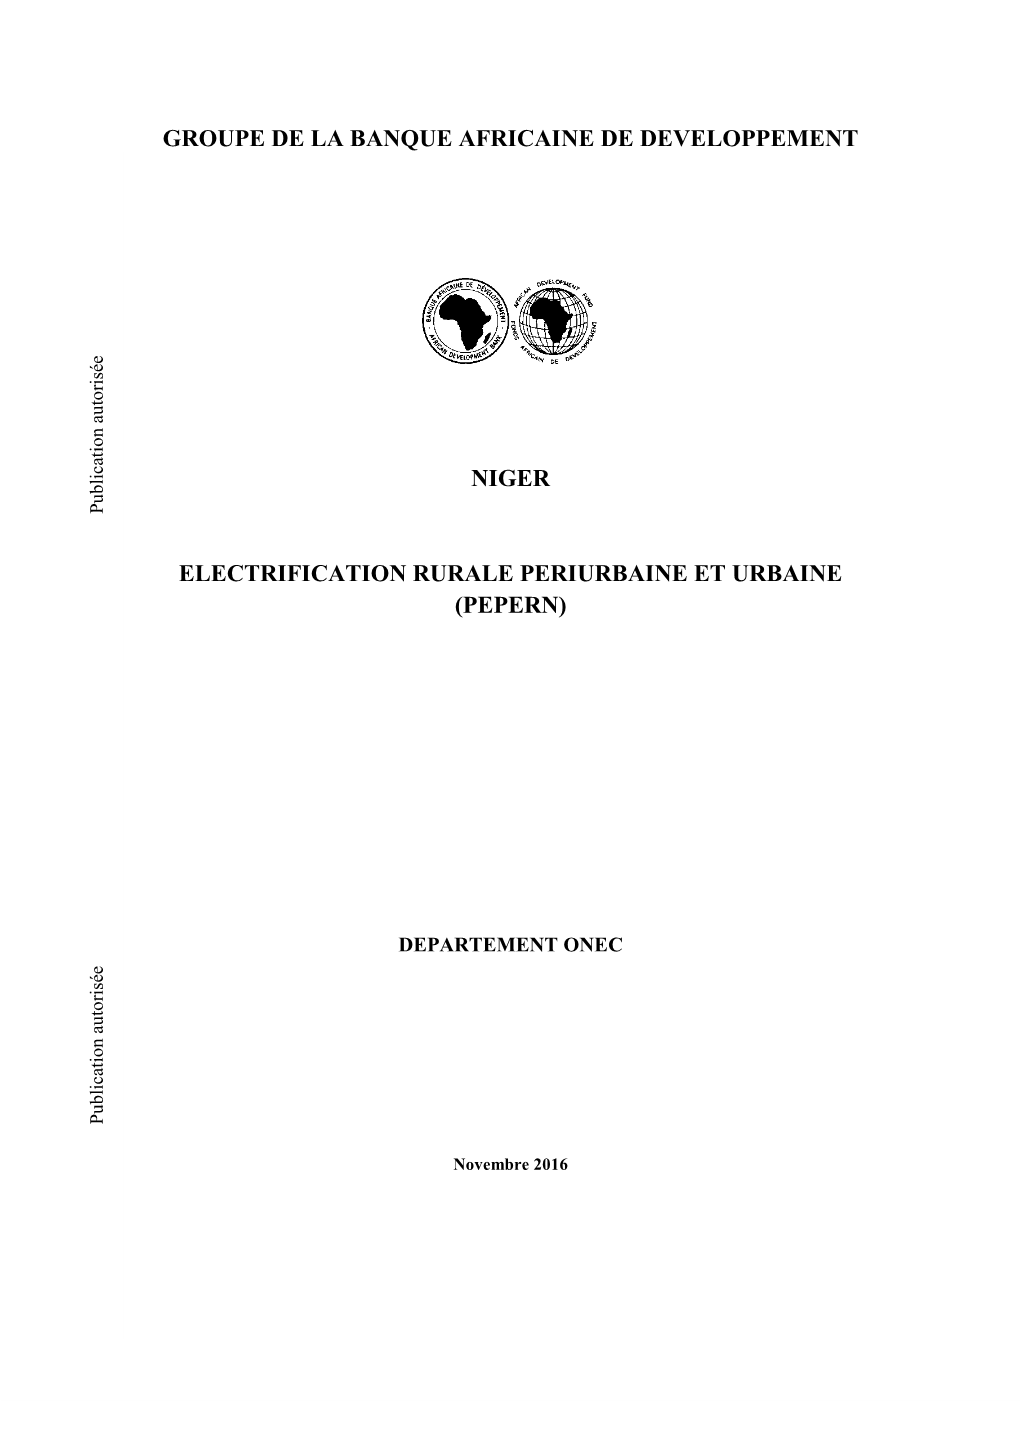 Groupe De La Banque Africaine De Developpement Niger Electrification Rurale Periurbaine Et Urbaine (Pepern)